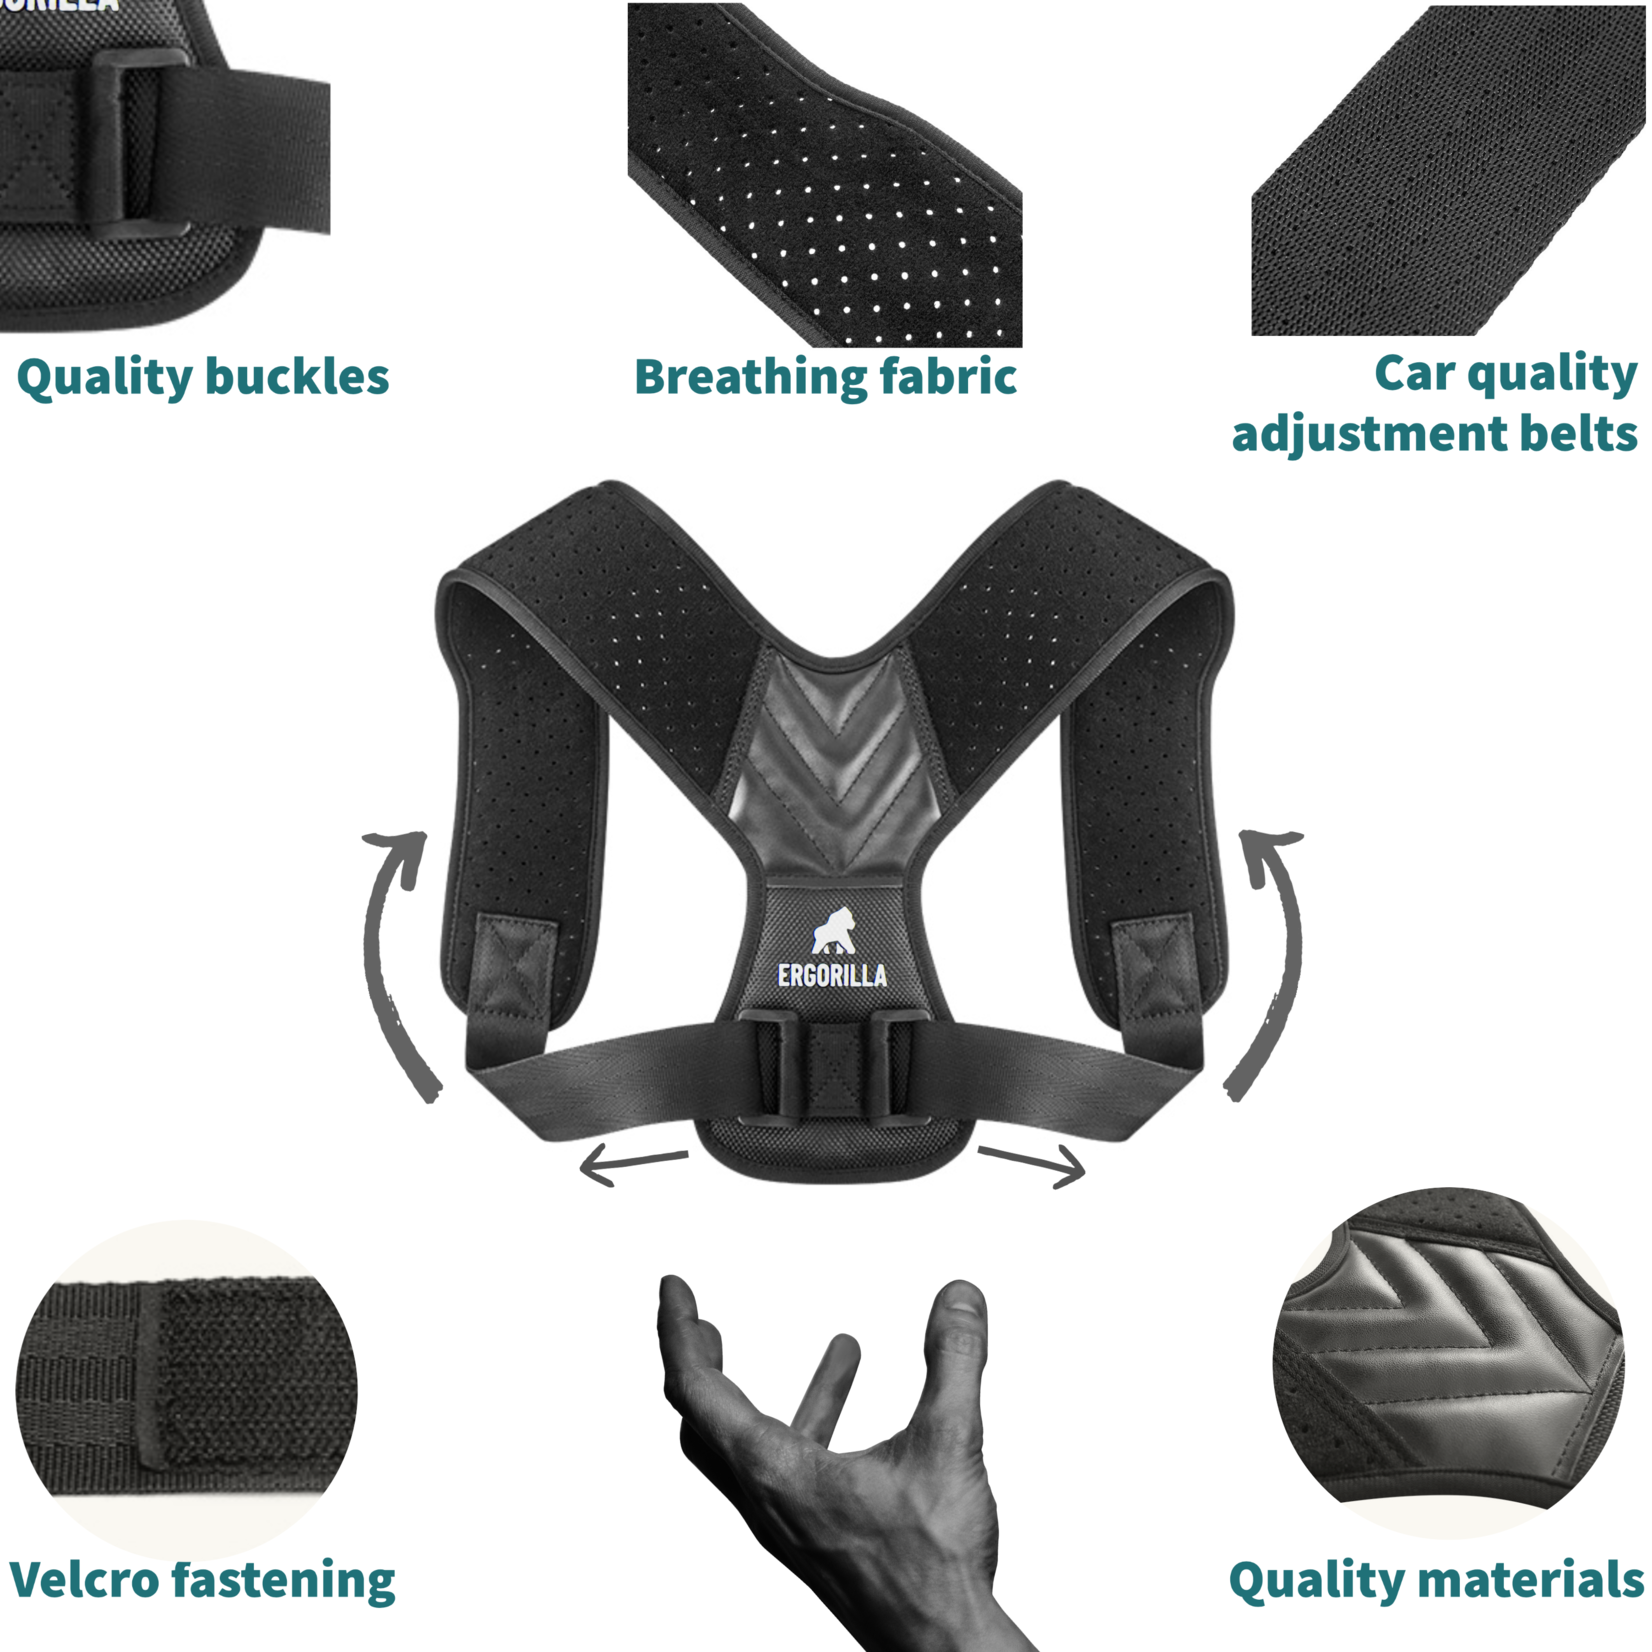 https://cdn.webshopapp.com/shops/305536/files/399131709/1652x1652x2/back-brace-posture-corrector-wide-support.jpg